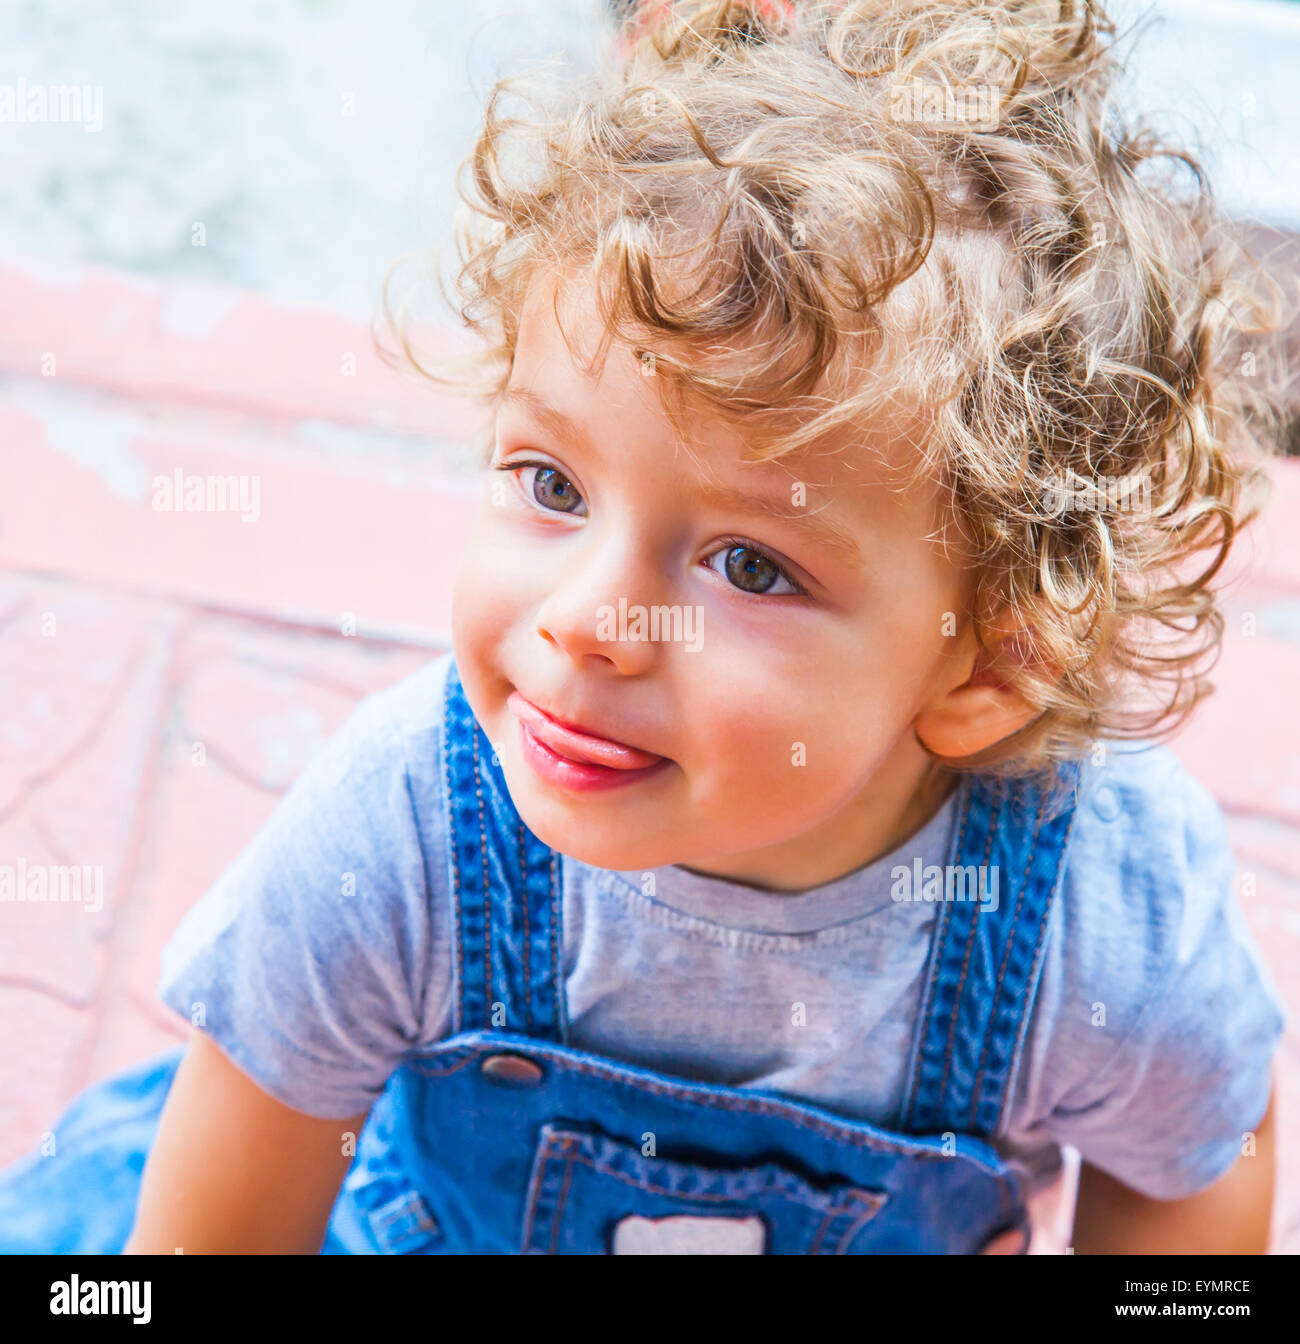 Retrato De Niño De 1 Año De Edad Bebé En Casa. Fotos, retratos, imágenes y  fotografía de archivo libres de derecho. Image 38967207